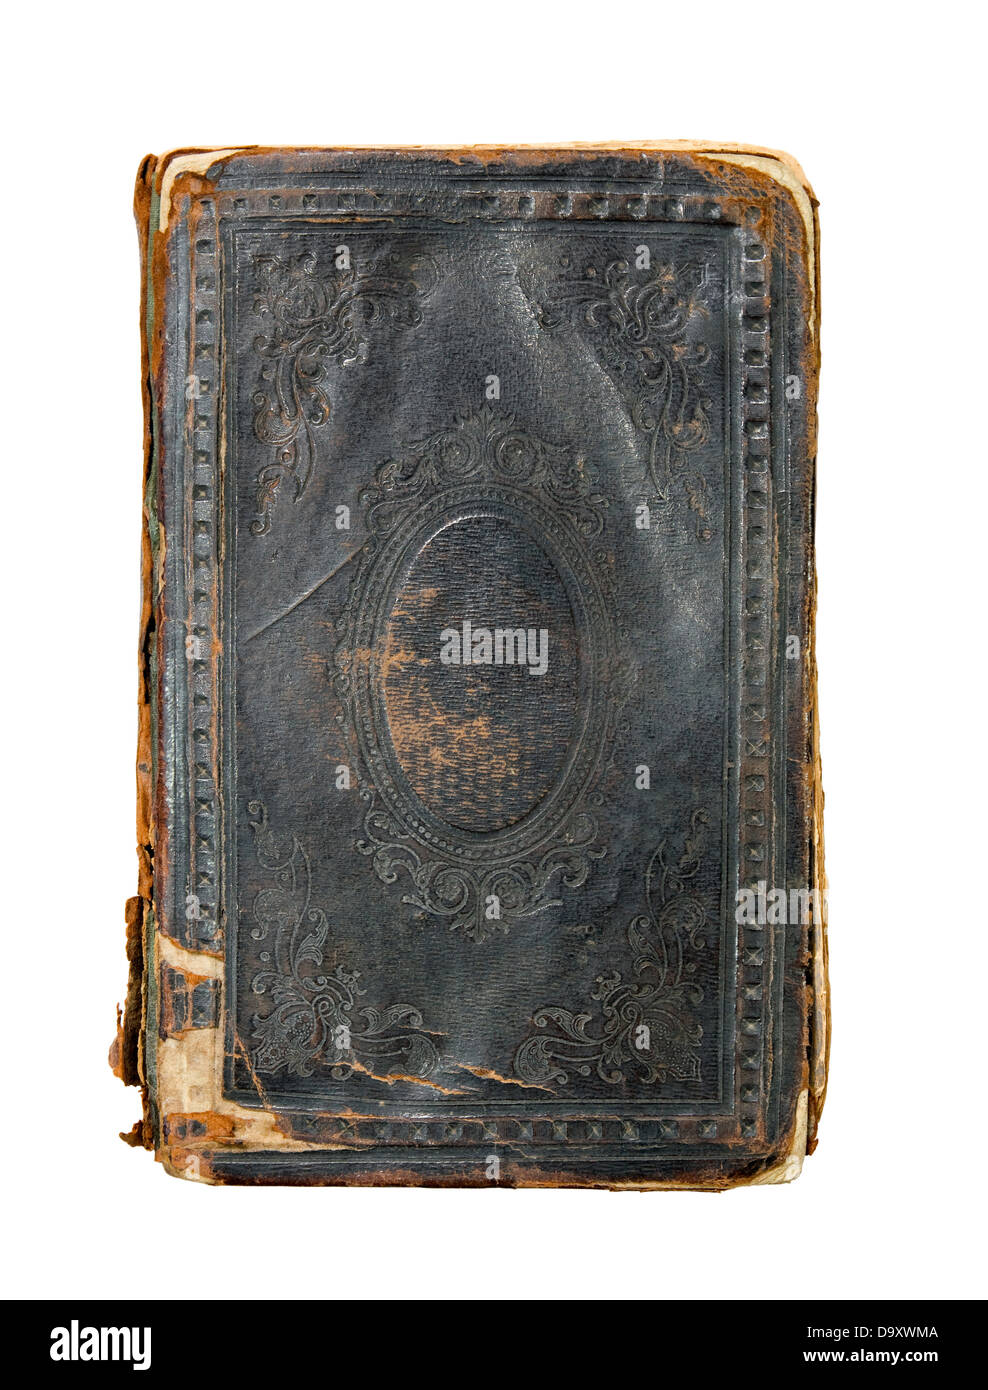 Couverture de livre ancien Banque d'images détourées - Alamy